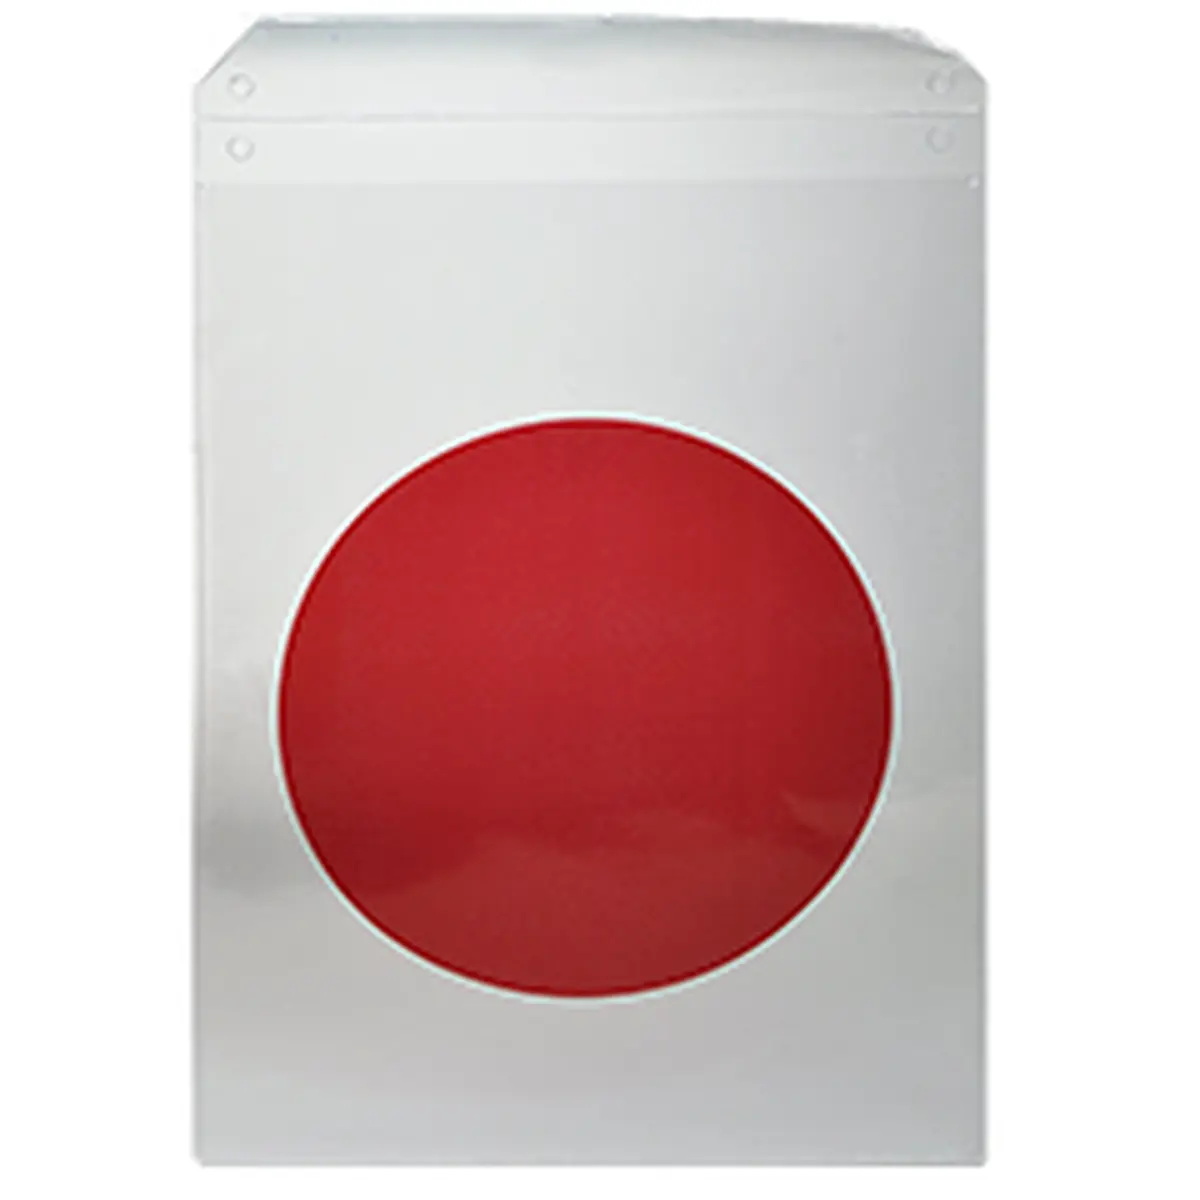 Plastikhülle Roter Punkt, Schutzhülle für Bautafel, 220 x 320 mm, mit Lasche, 10 Stück